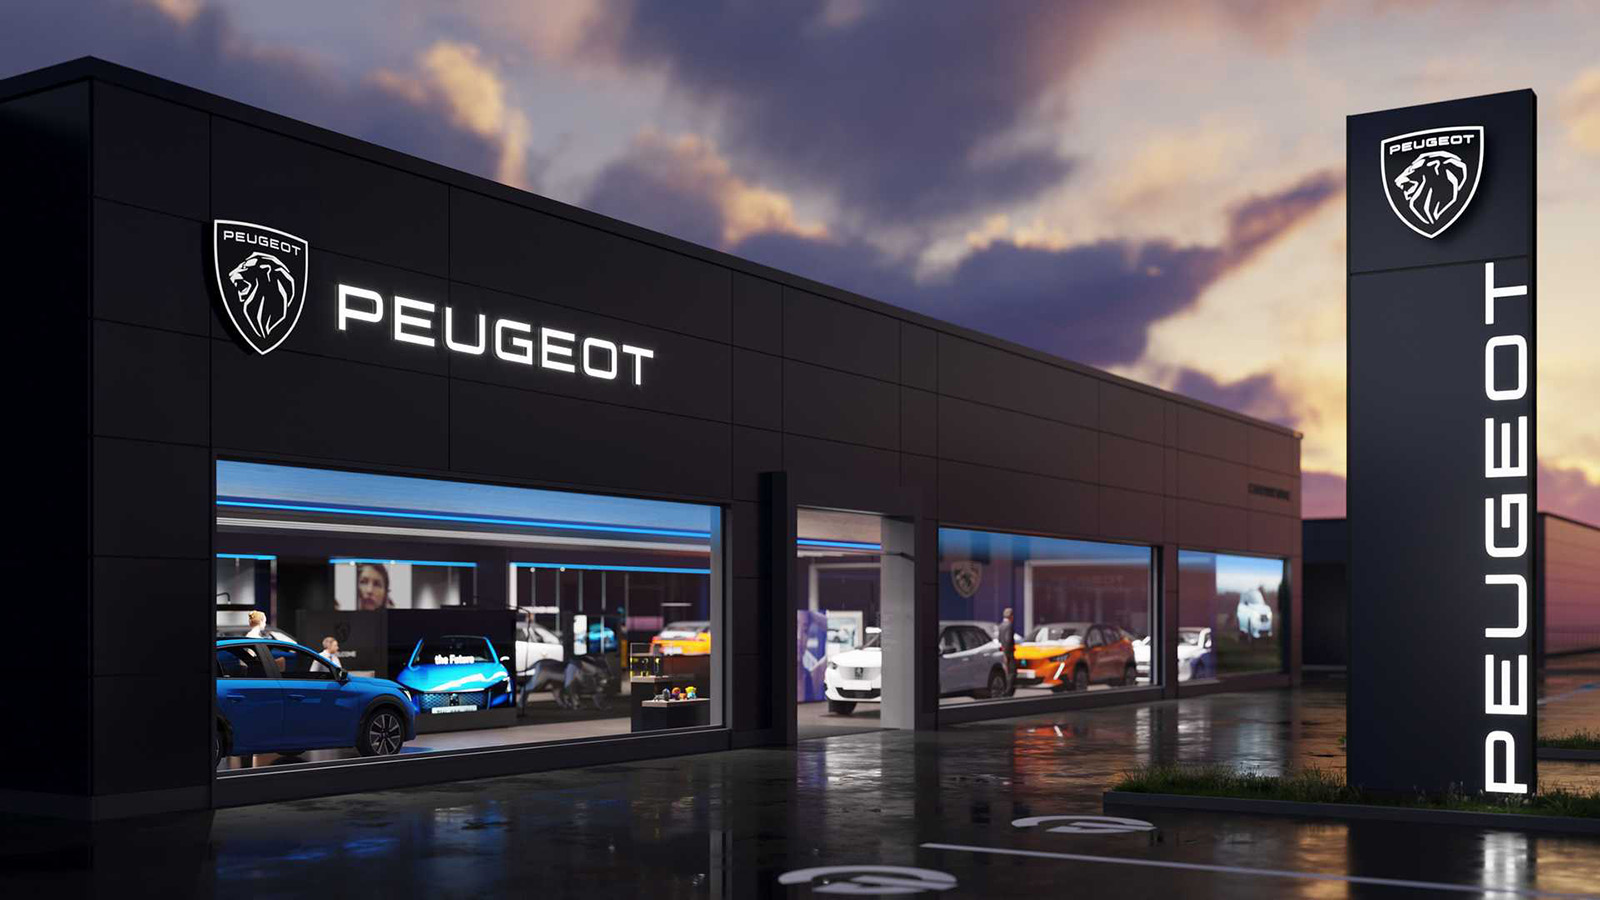 Peugeot có logo thương hiệu mới